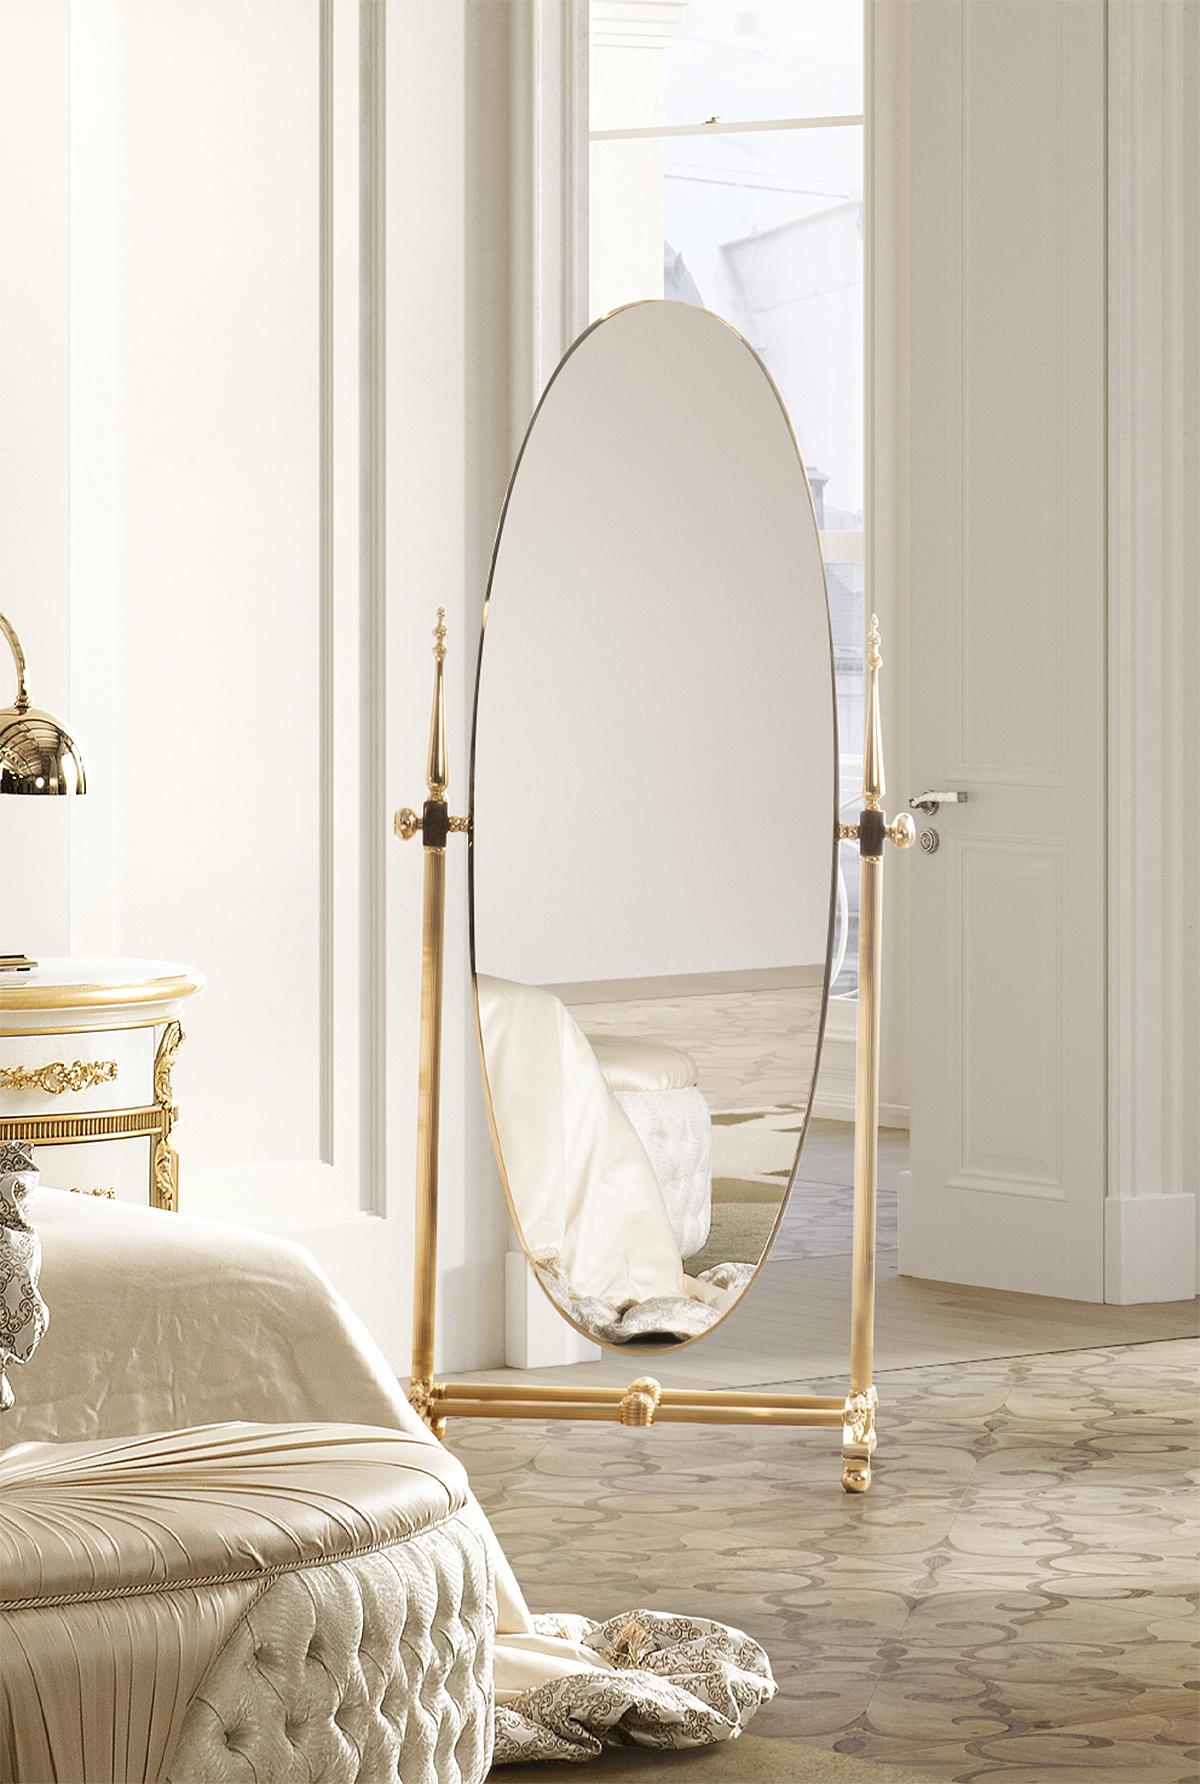 Le miroir inclinable EL065 est une création élégante de haute facture, un meuble qui ajoutera du charme et du style à n'importe quelle pièce.

Le matériau principal de ce miroir est le laiton, connu pour son éclat et sa capacité à résister au